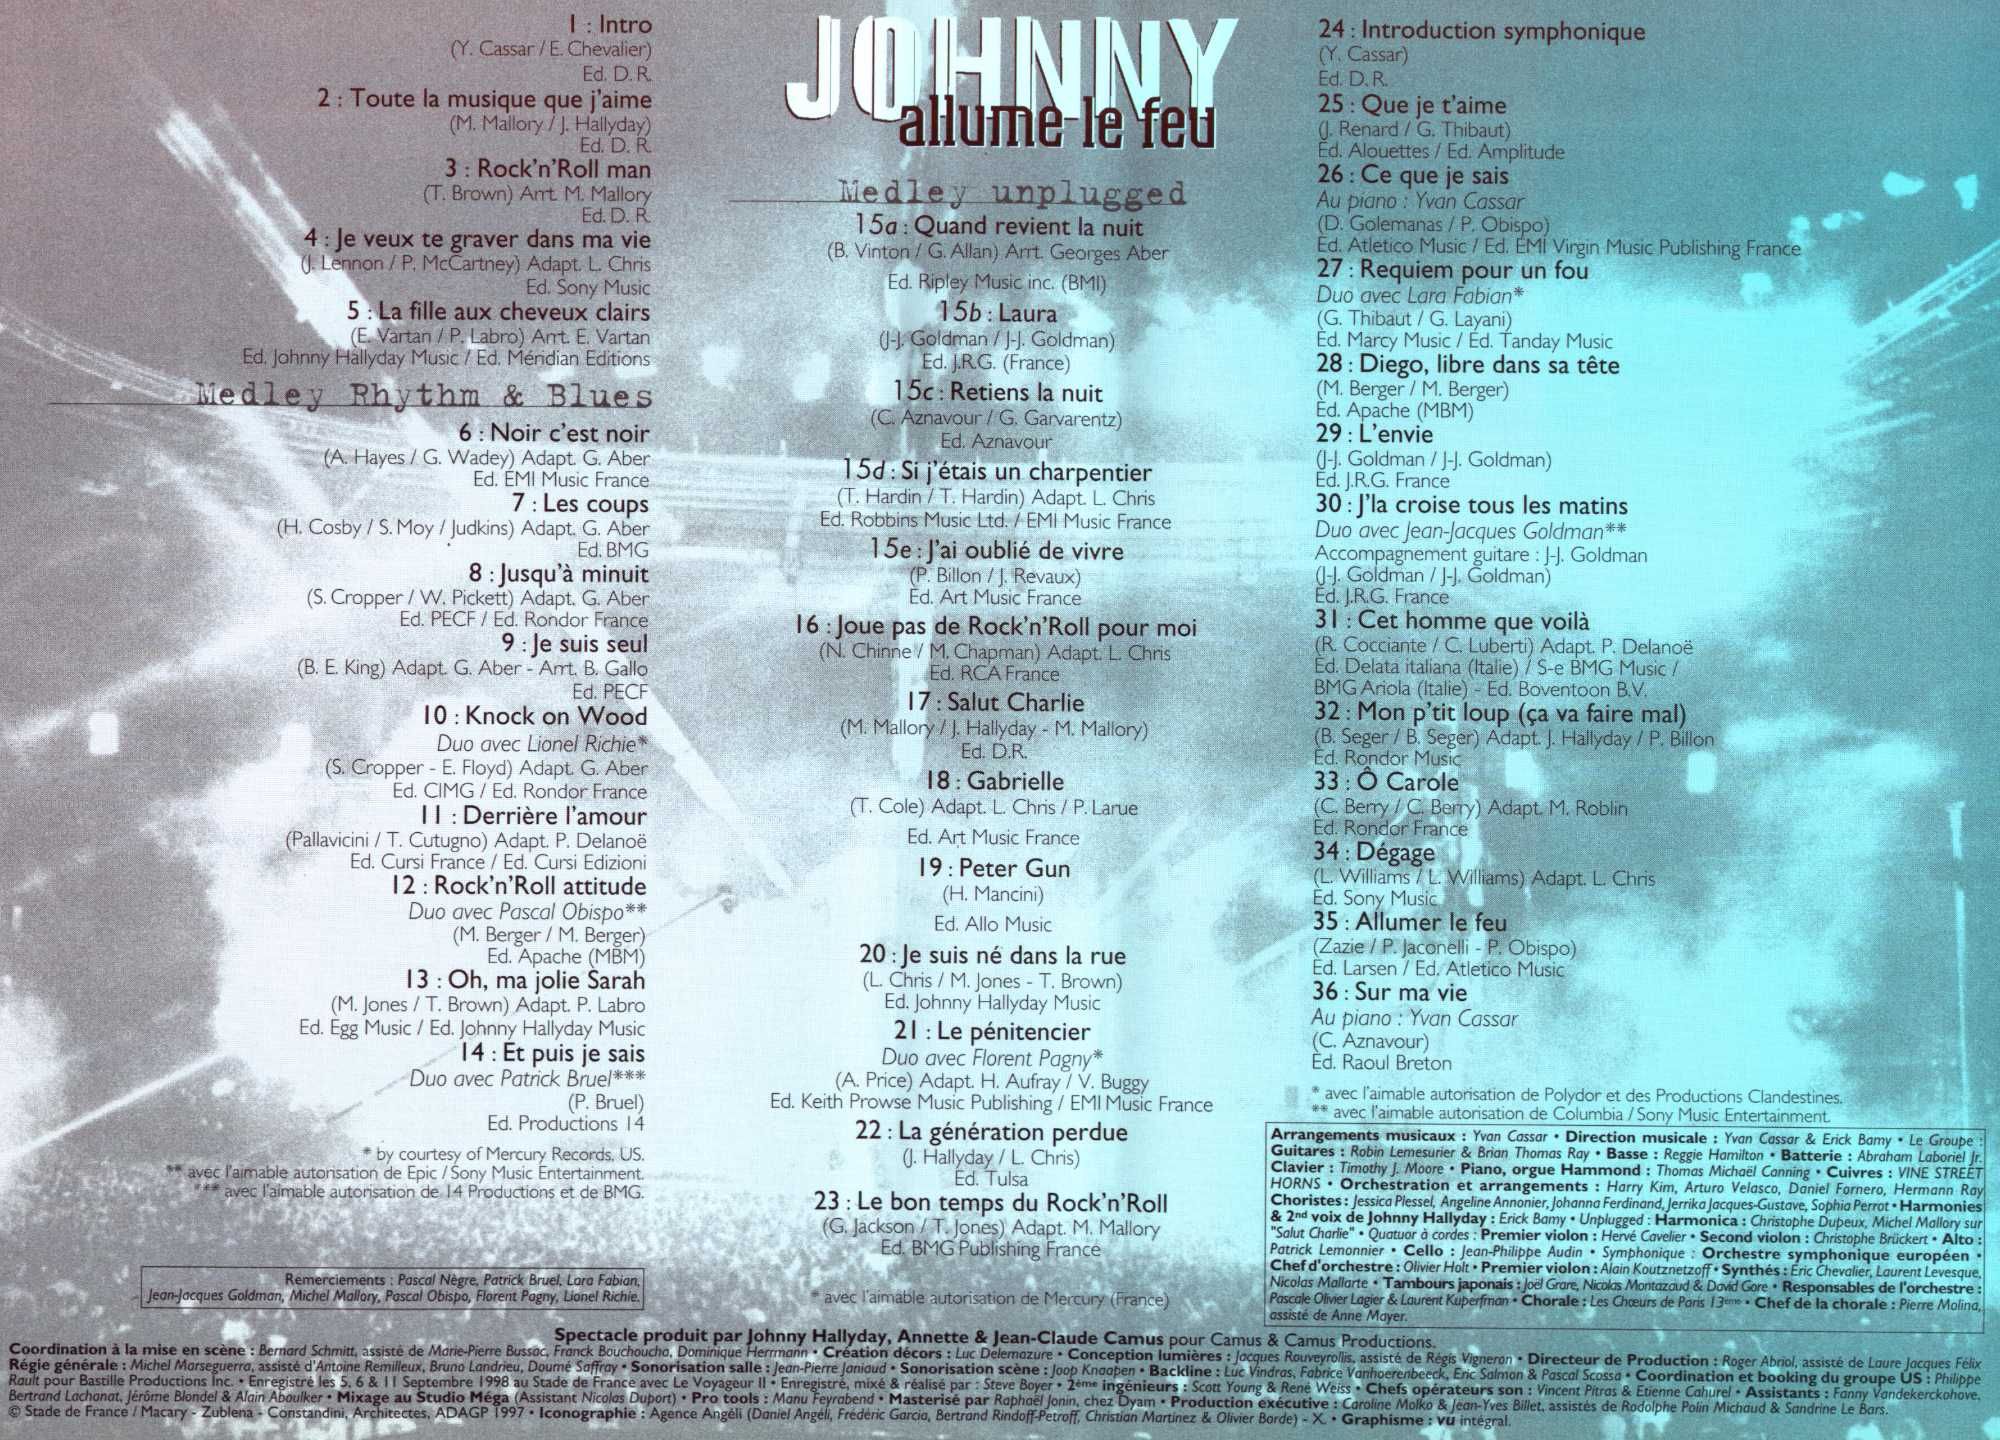 Johnny Hallyday Stade de France 98 Allume le feu. Koncert VHS